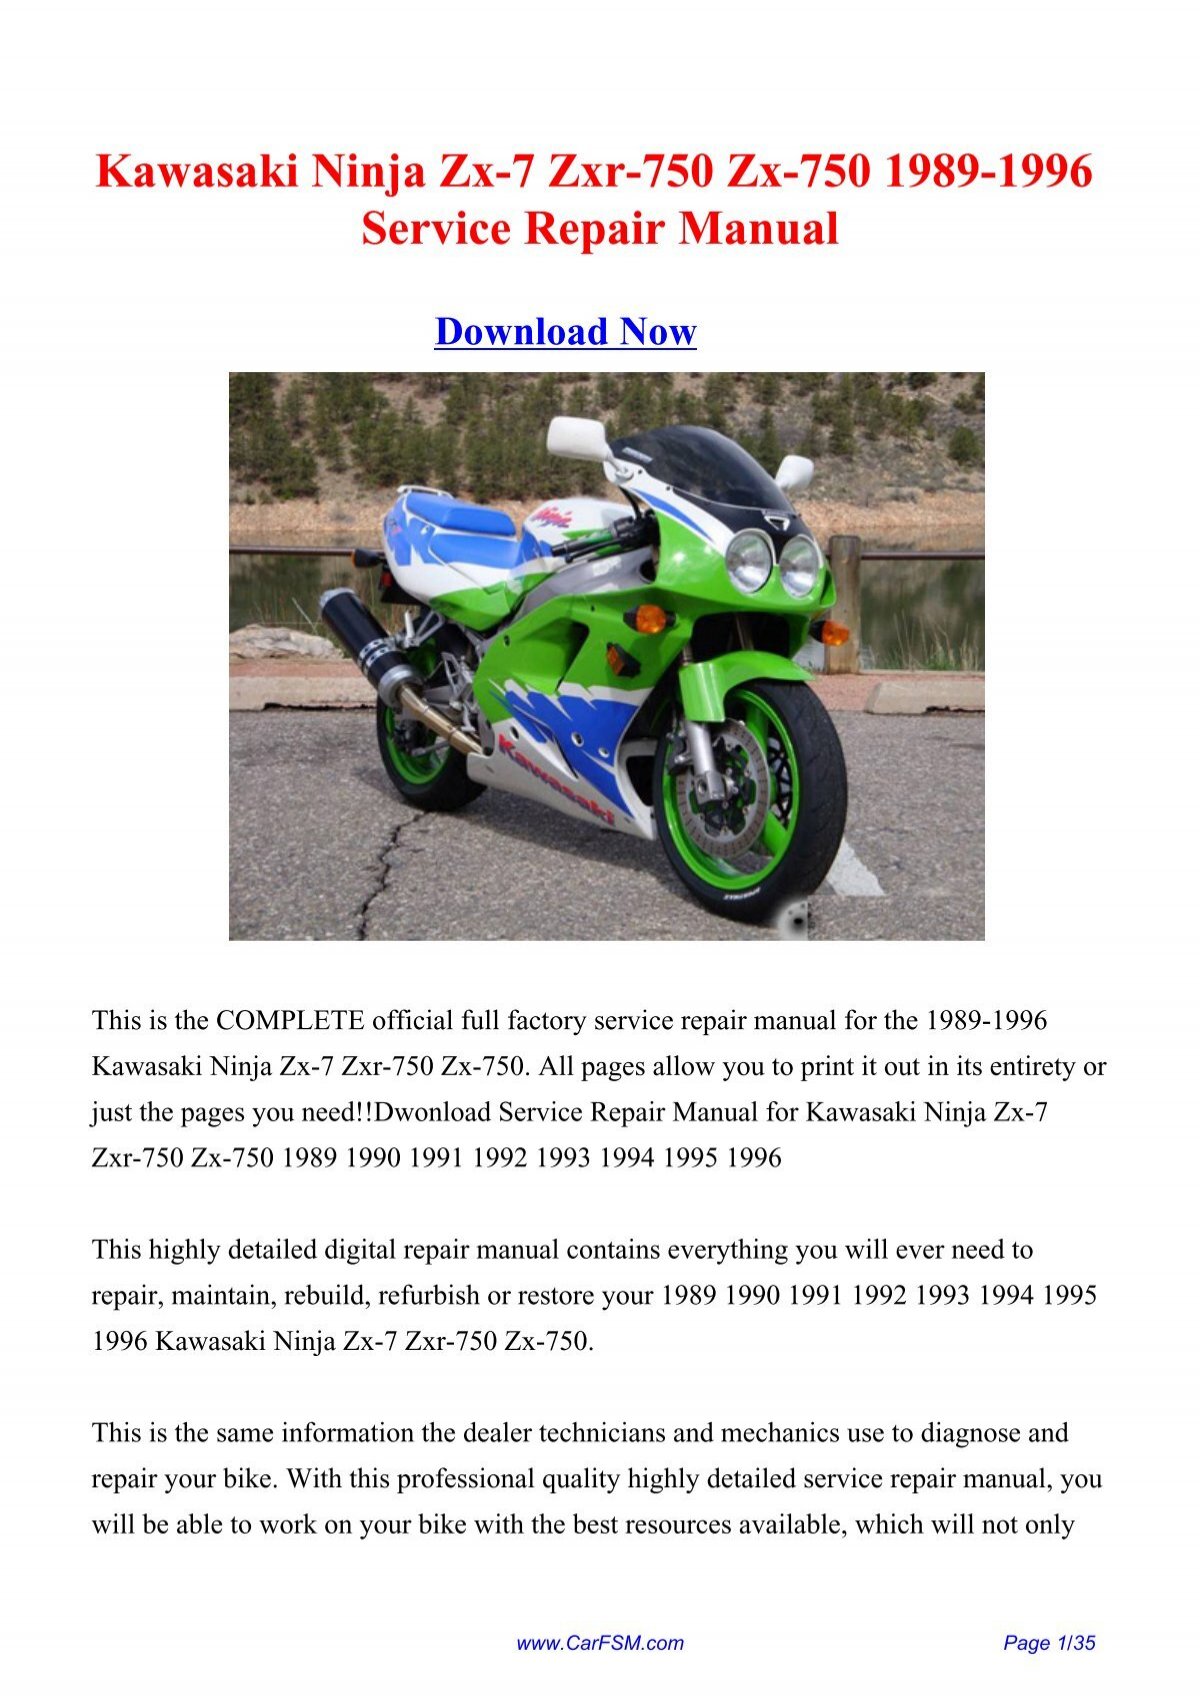 1989-1996 Kawasaki Ninja Zxr-750 Zx-750 ... - Repair manual